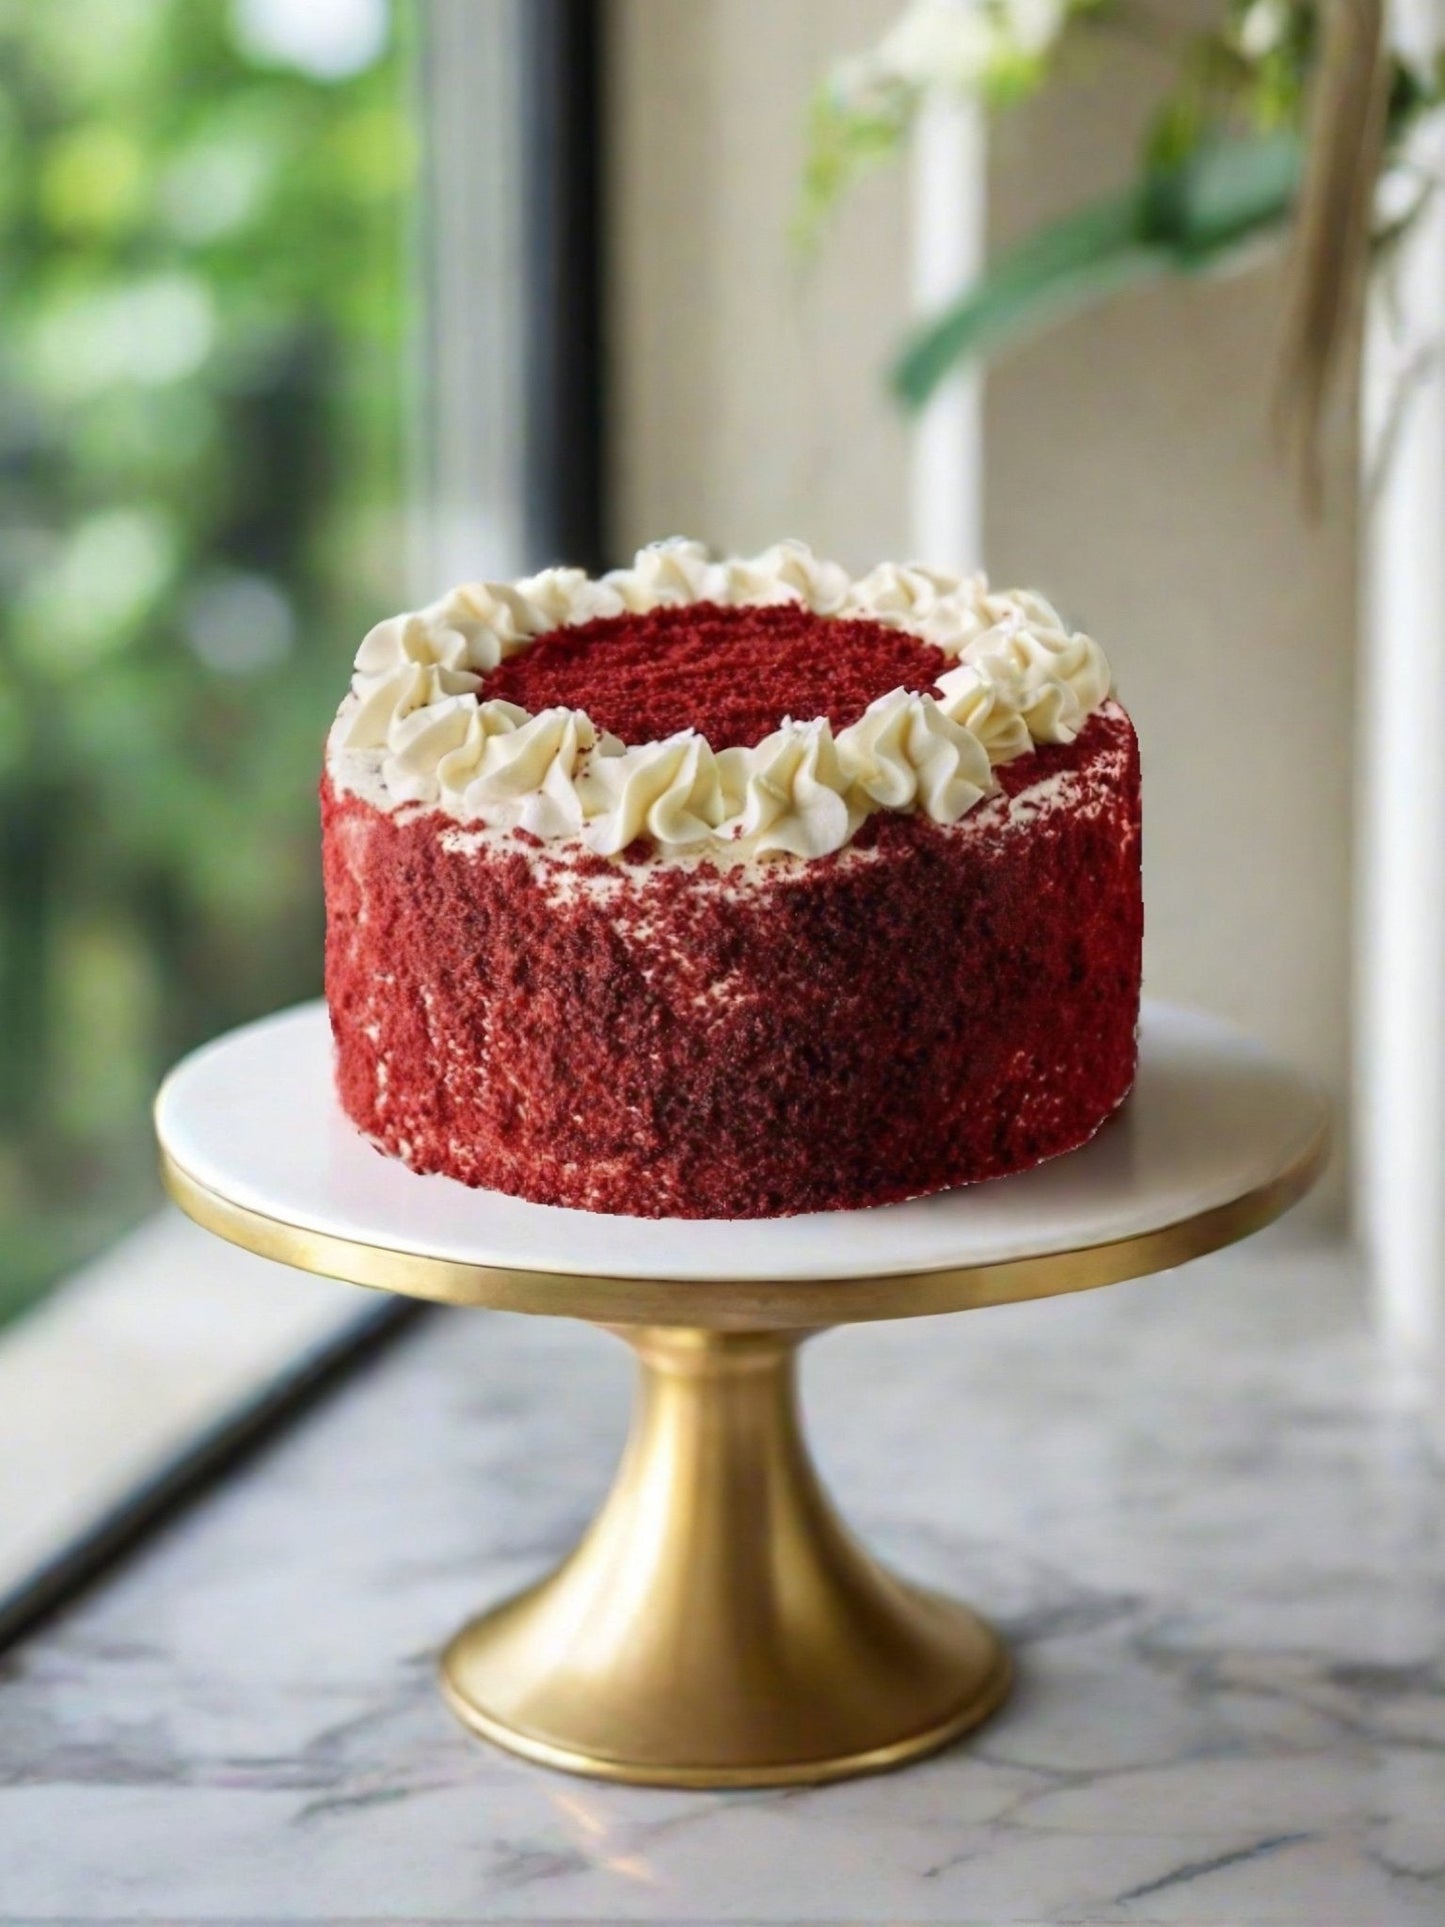 50th Birthday Cake Bundle - Red Velvet Cake - Patisserie Valerie